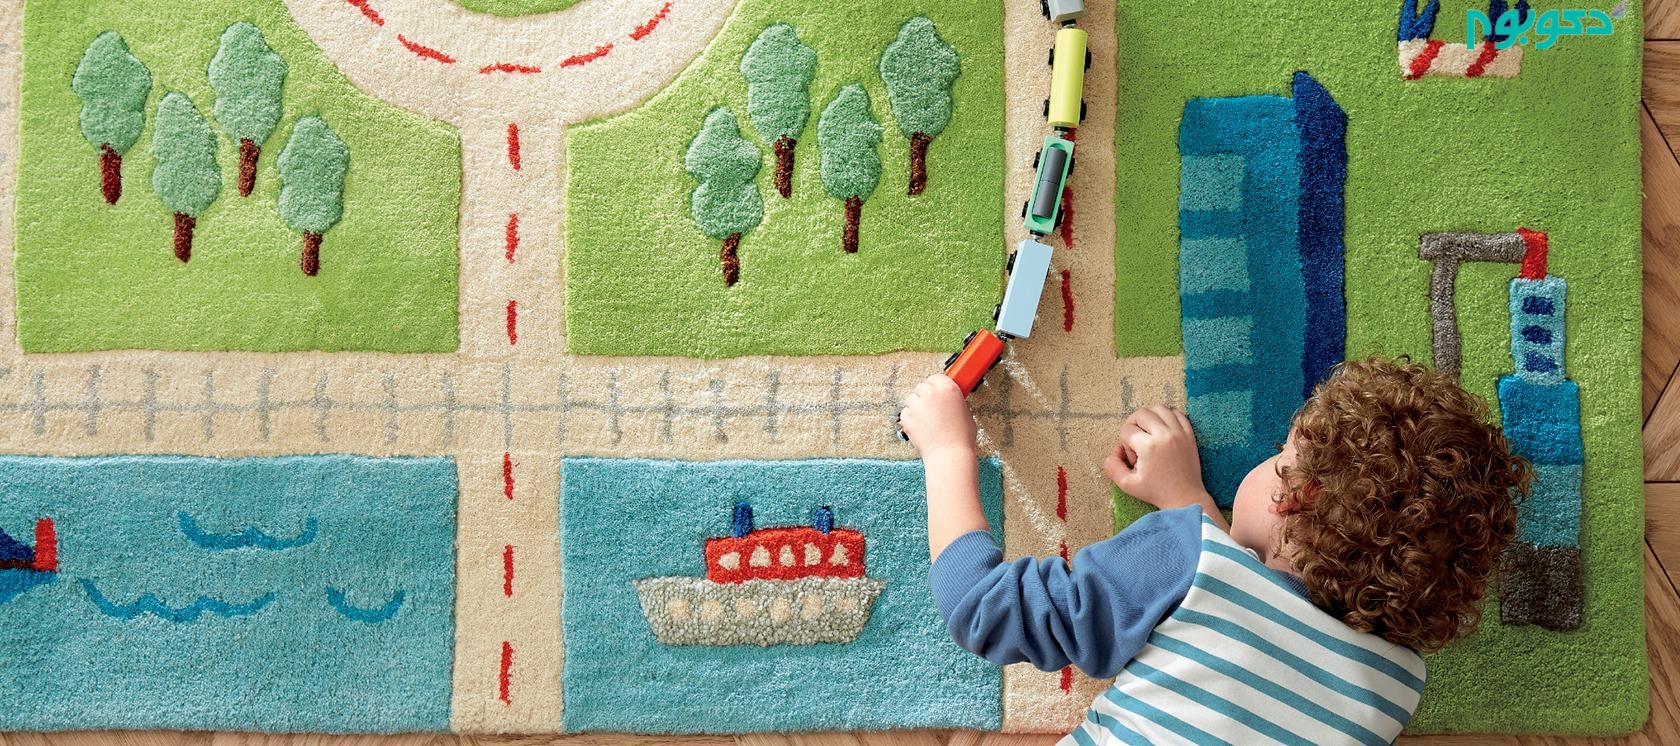 فرش های کودکانه در دکوراسیون برای بازی کودکان